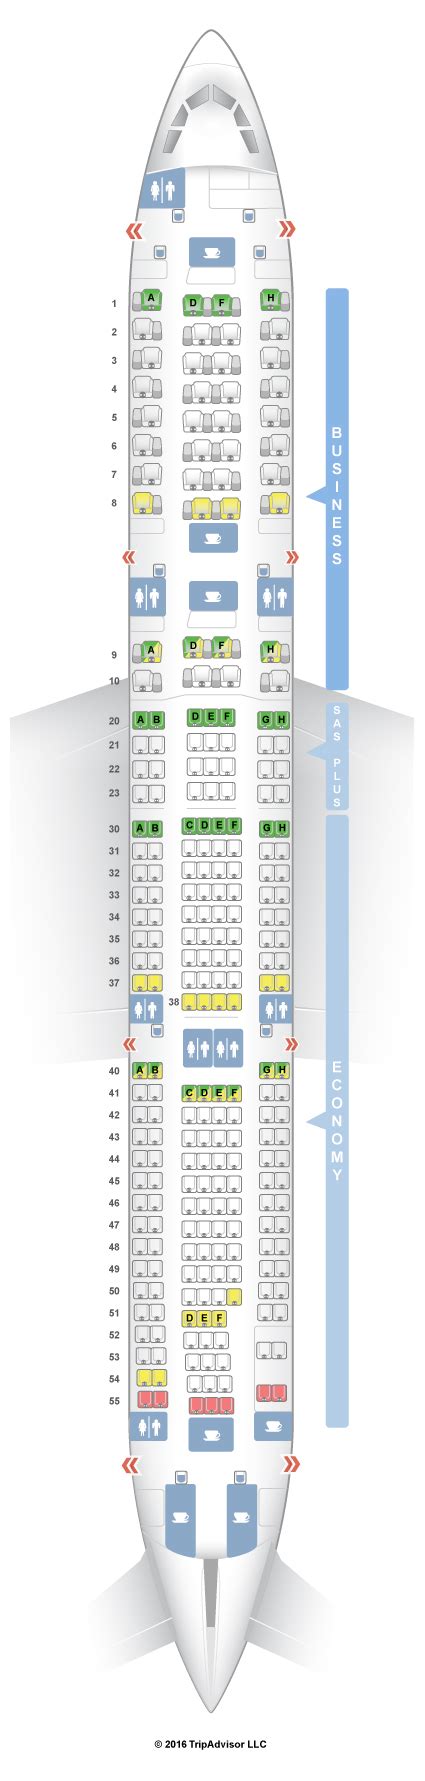 Seatguru Seat Map Sas Airbus A340 300 343